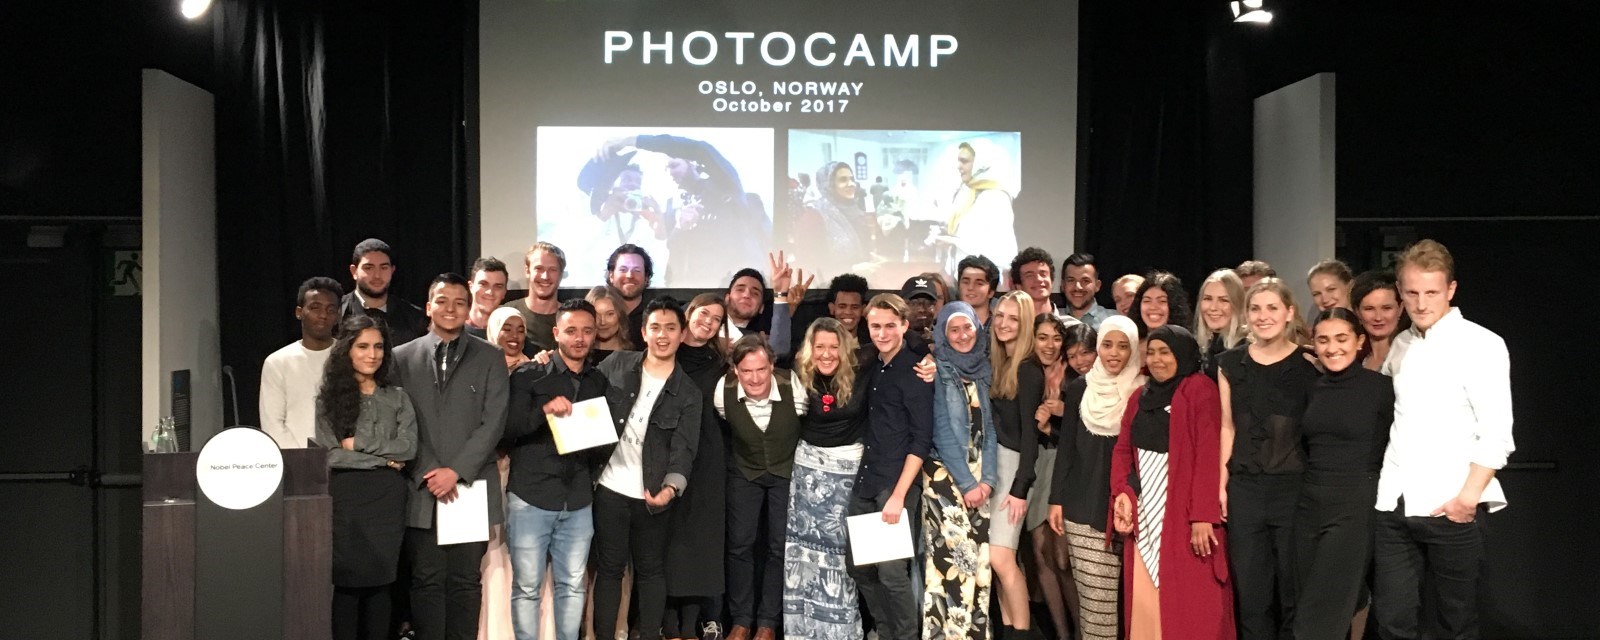 National Geographic Photo Camp-studentene poserer på presentasjon hos Nobels fredssenter